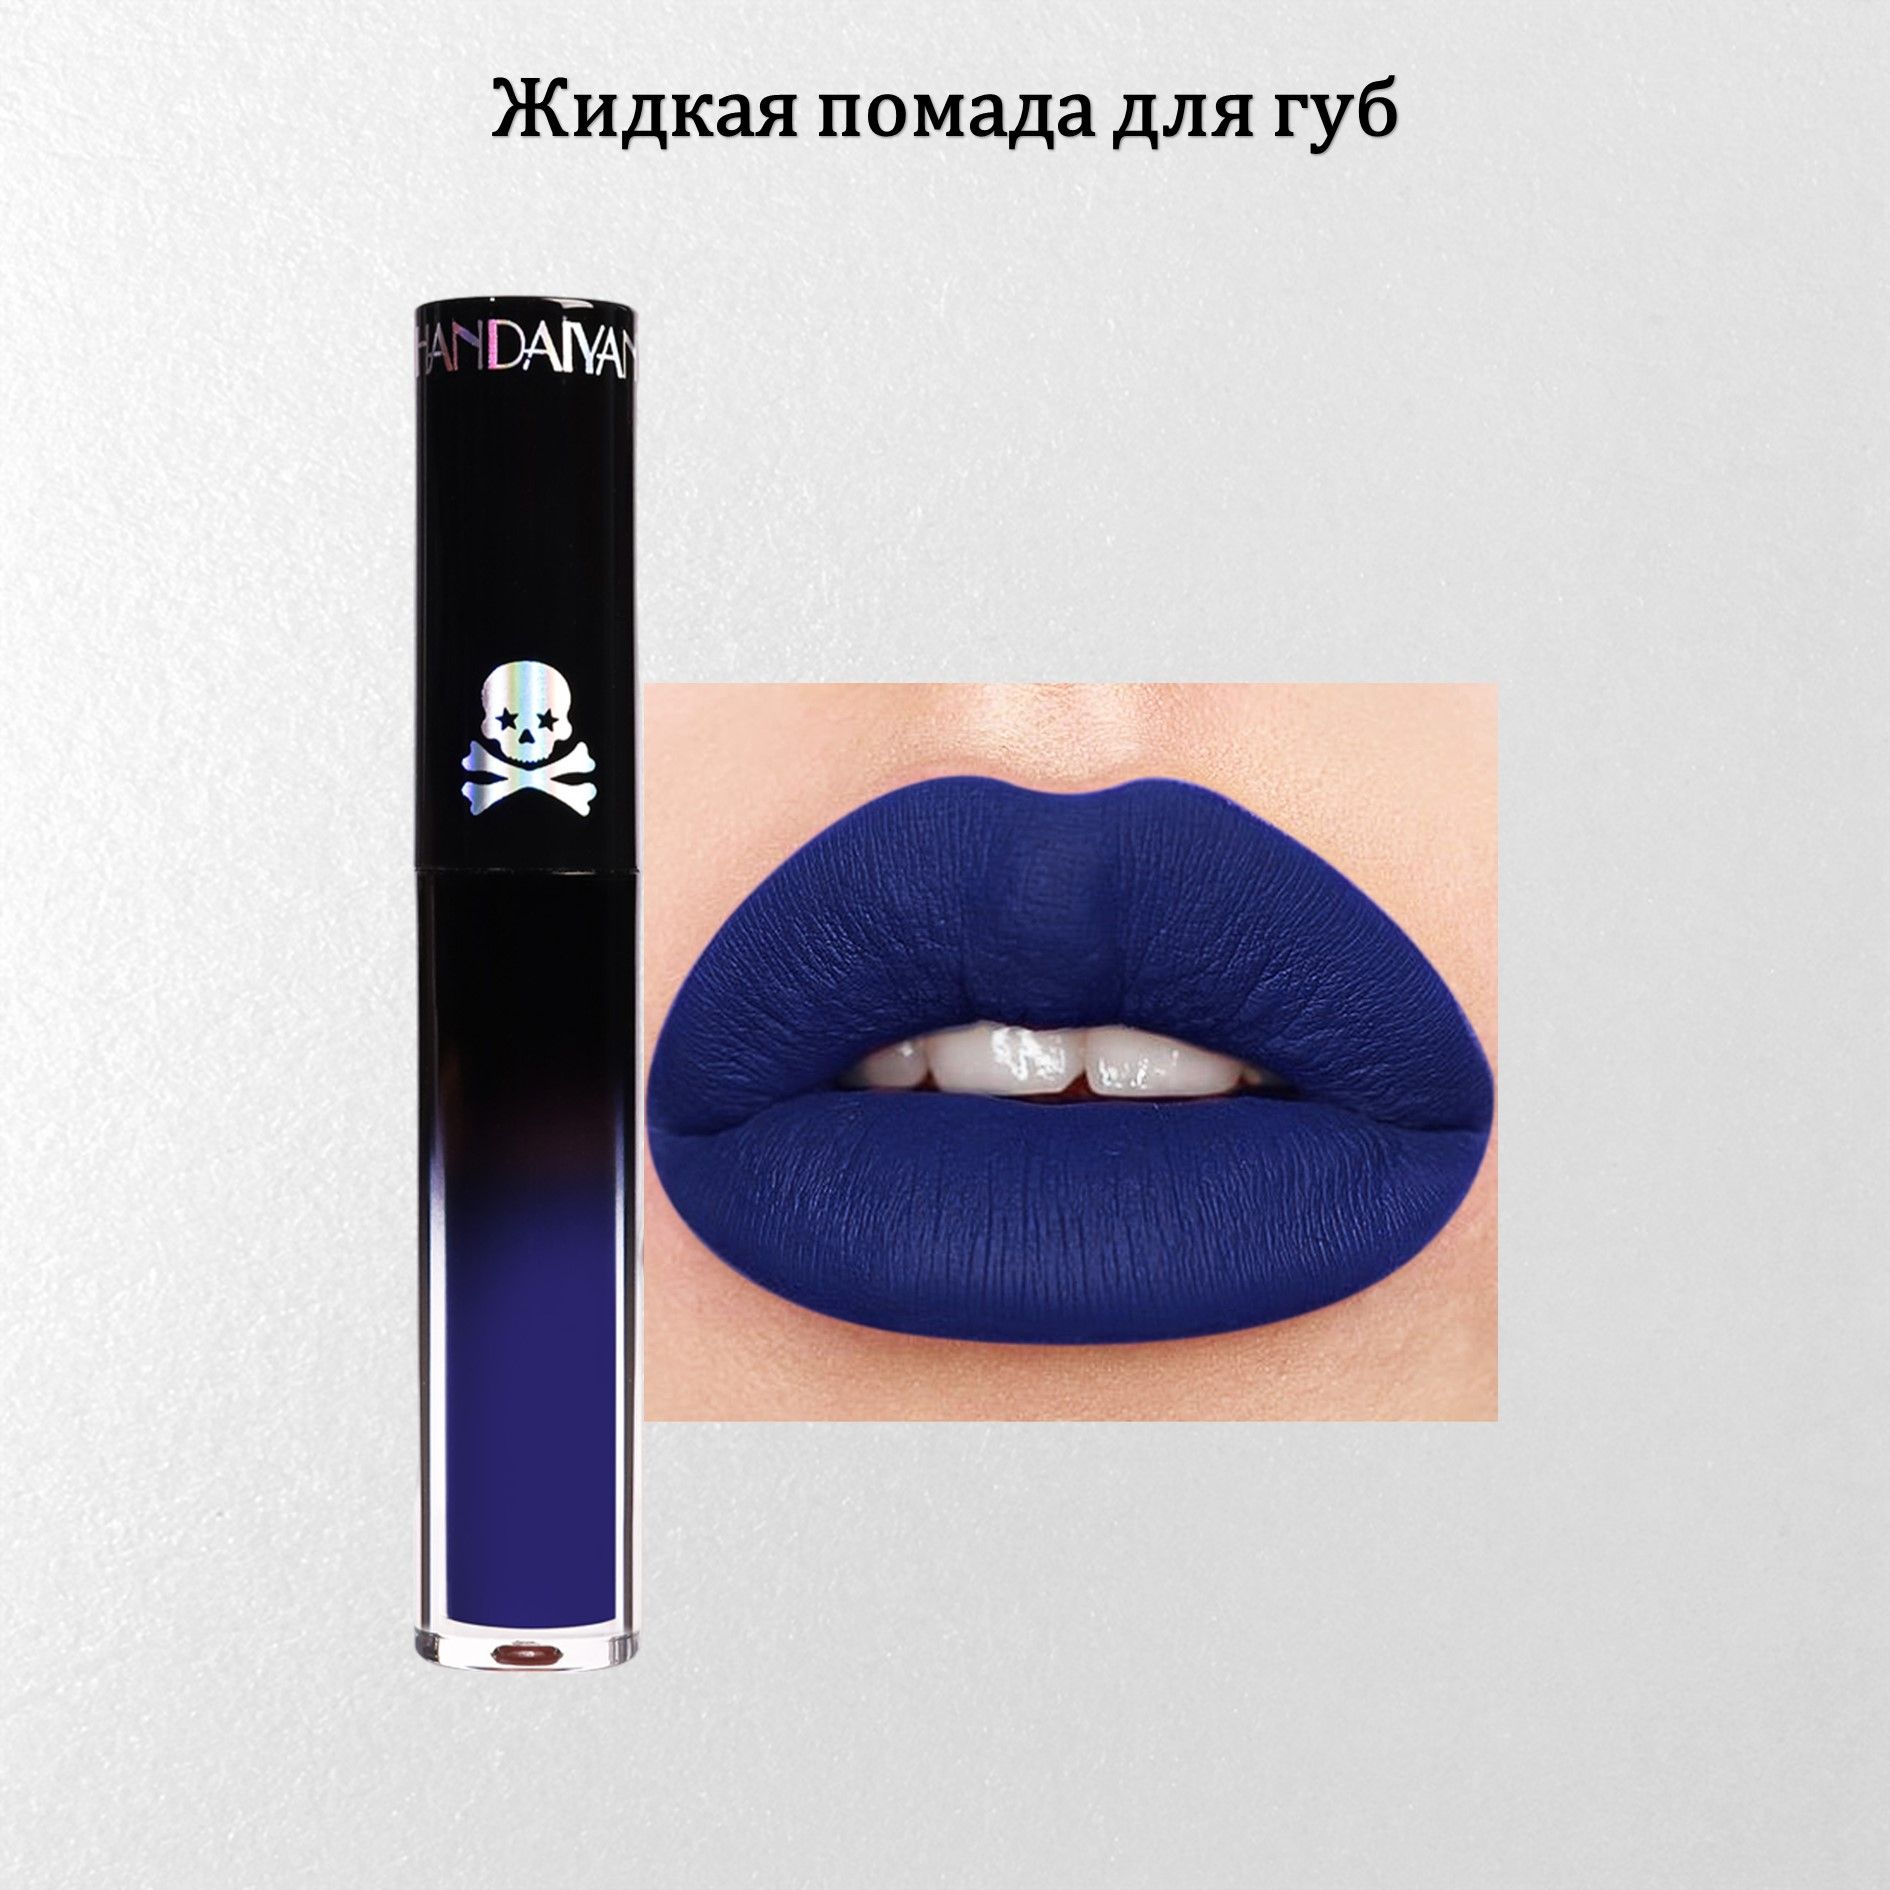 Жидкая матовая помада для губ Handaiyan синяя губка круглая 2 крупнопористая 6 х 6 х 12 см синяя